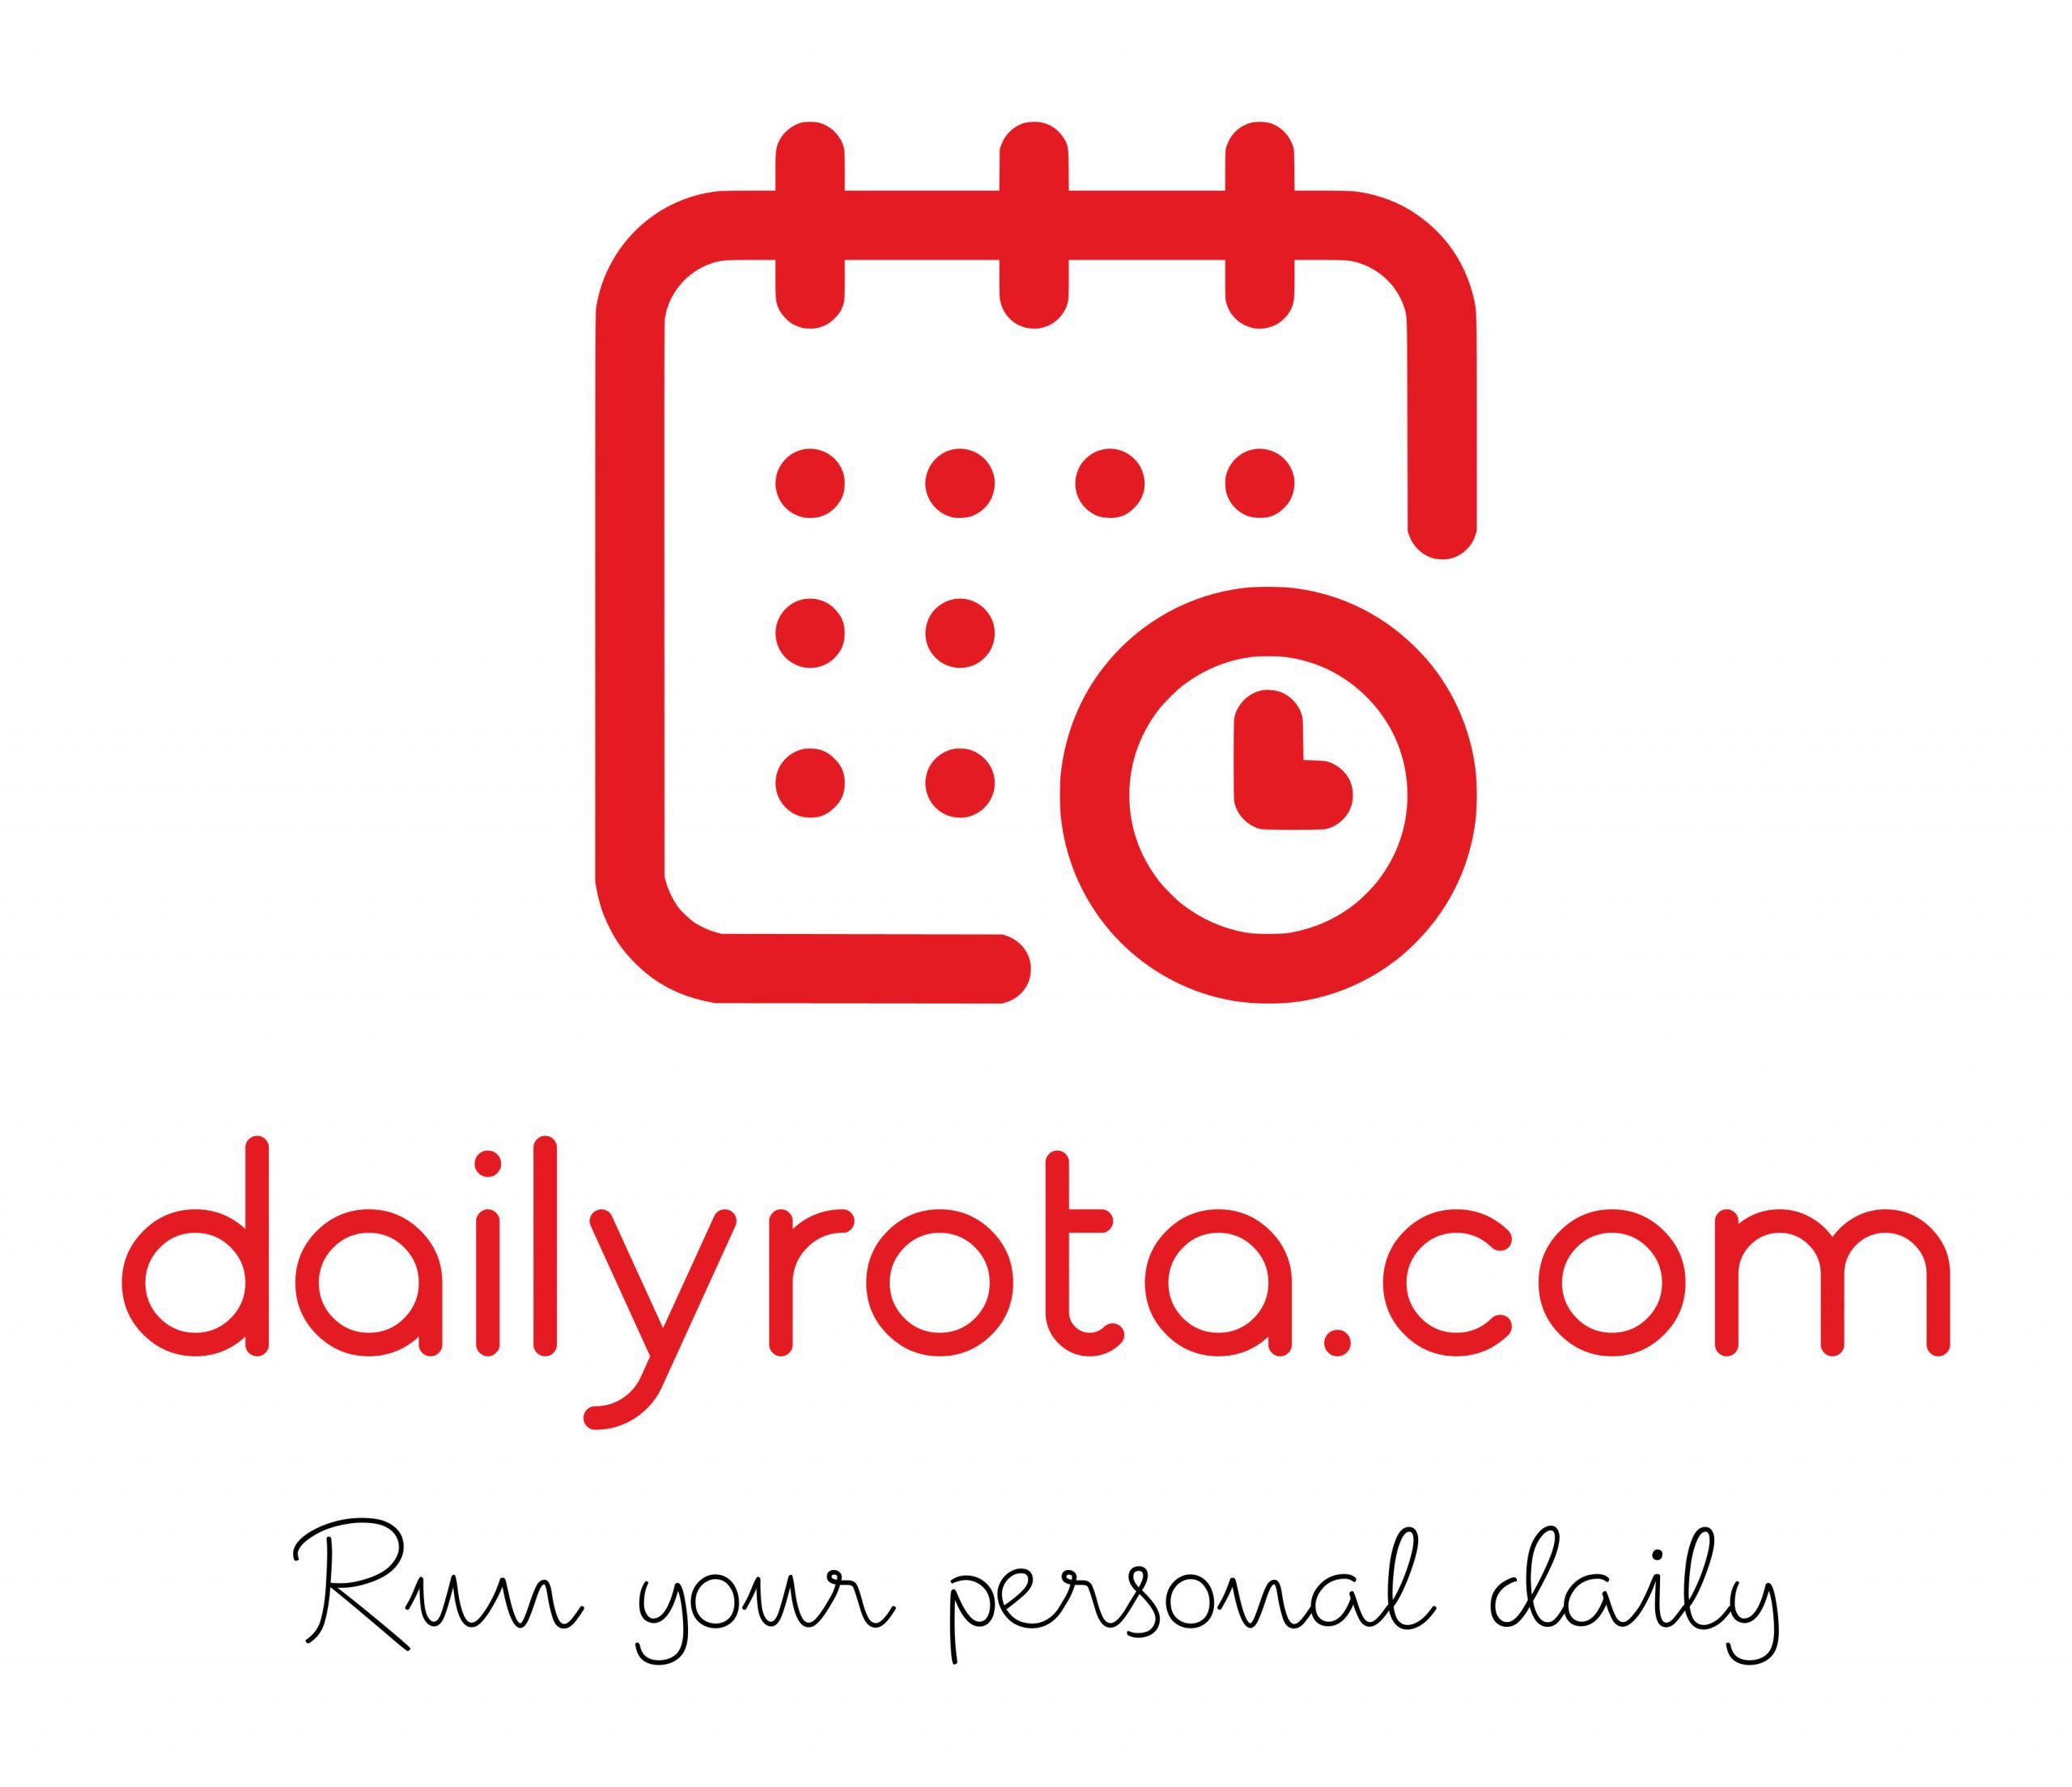 dailyrota.com